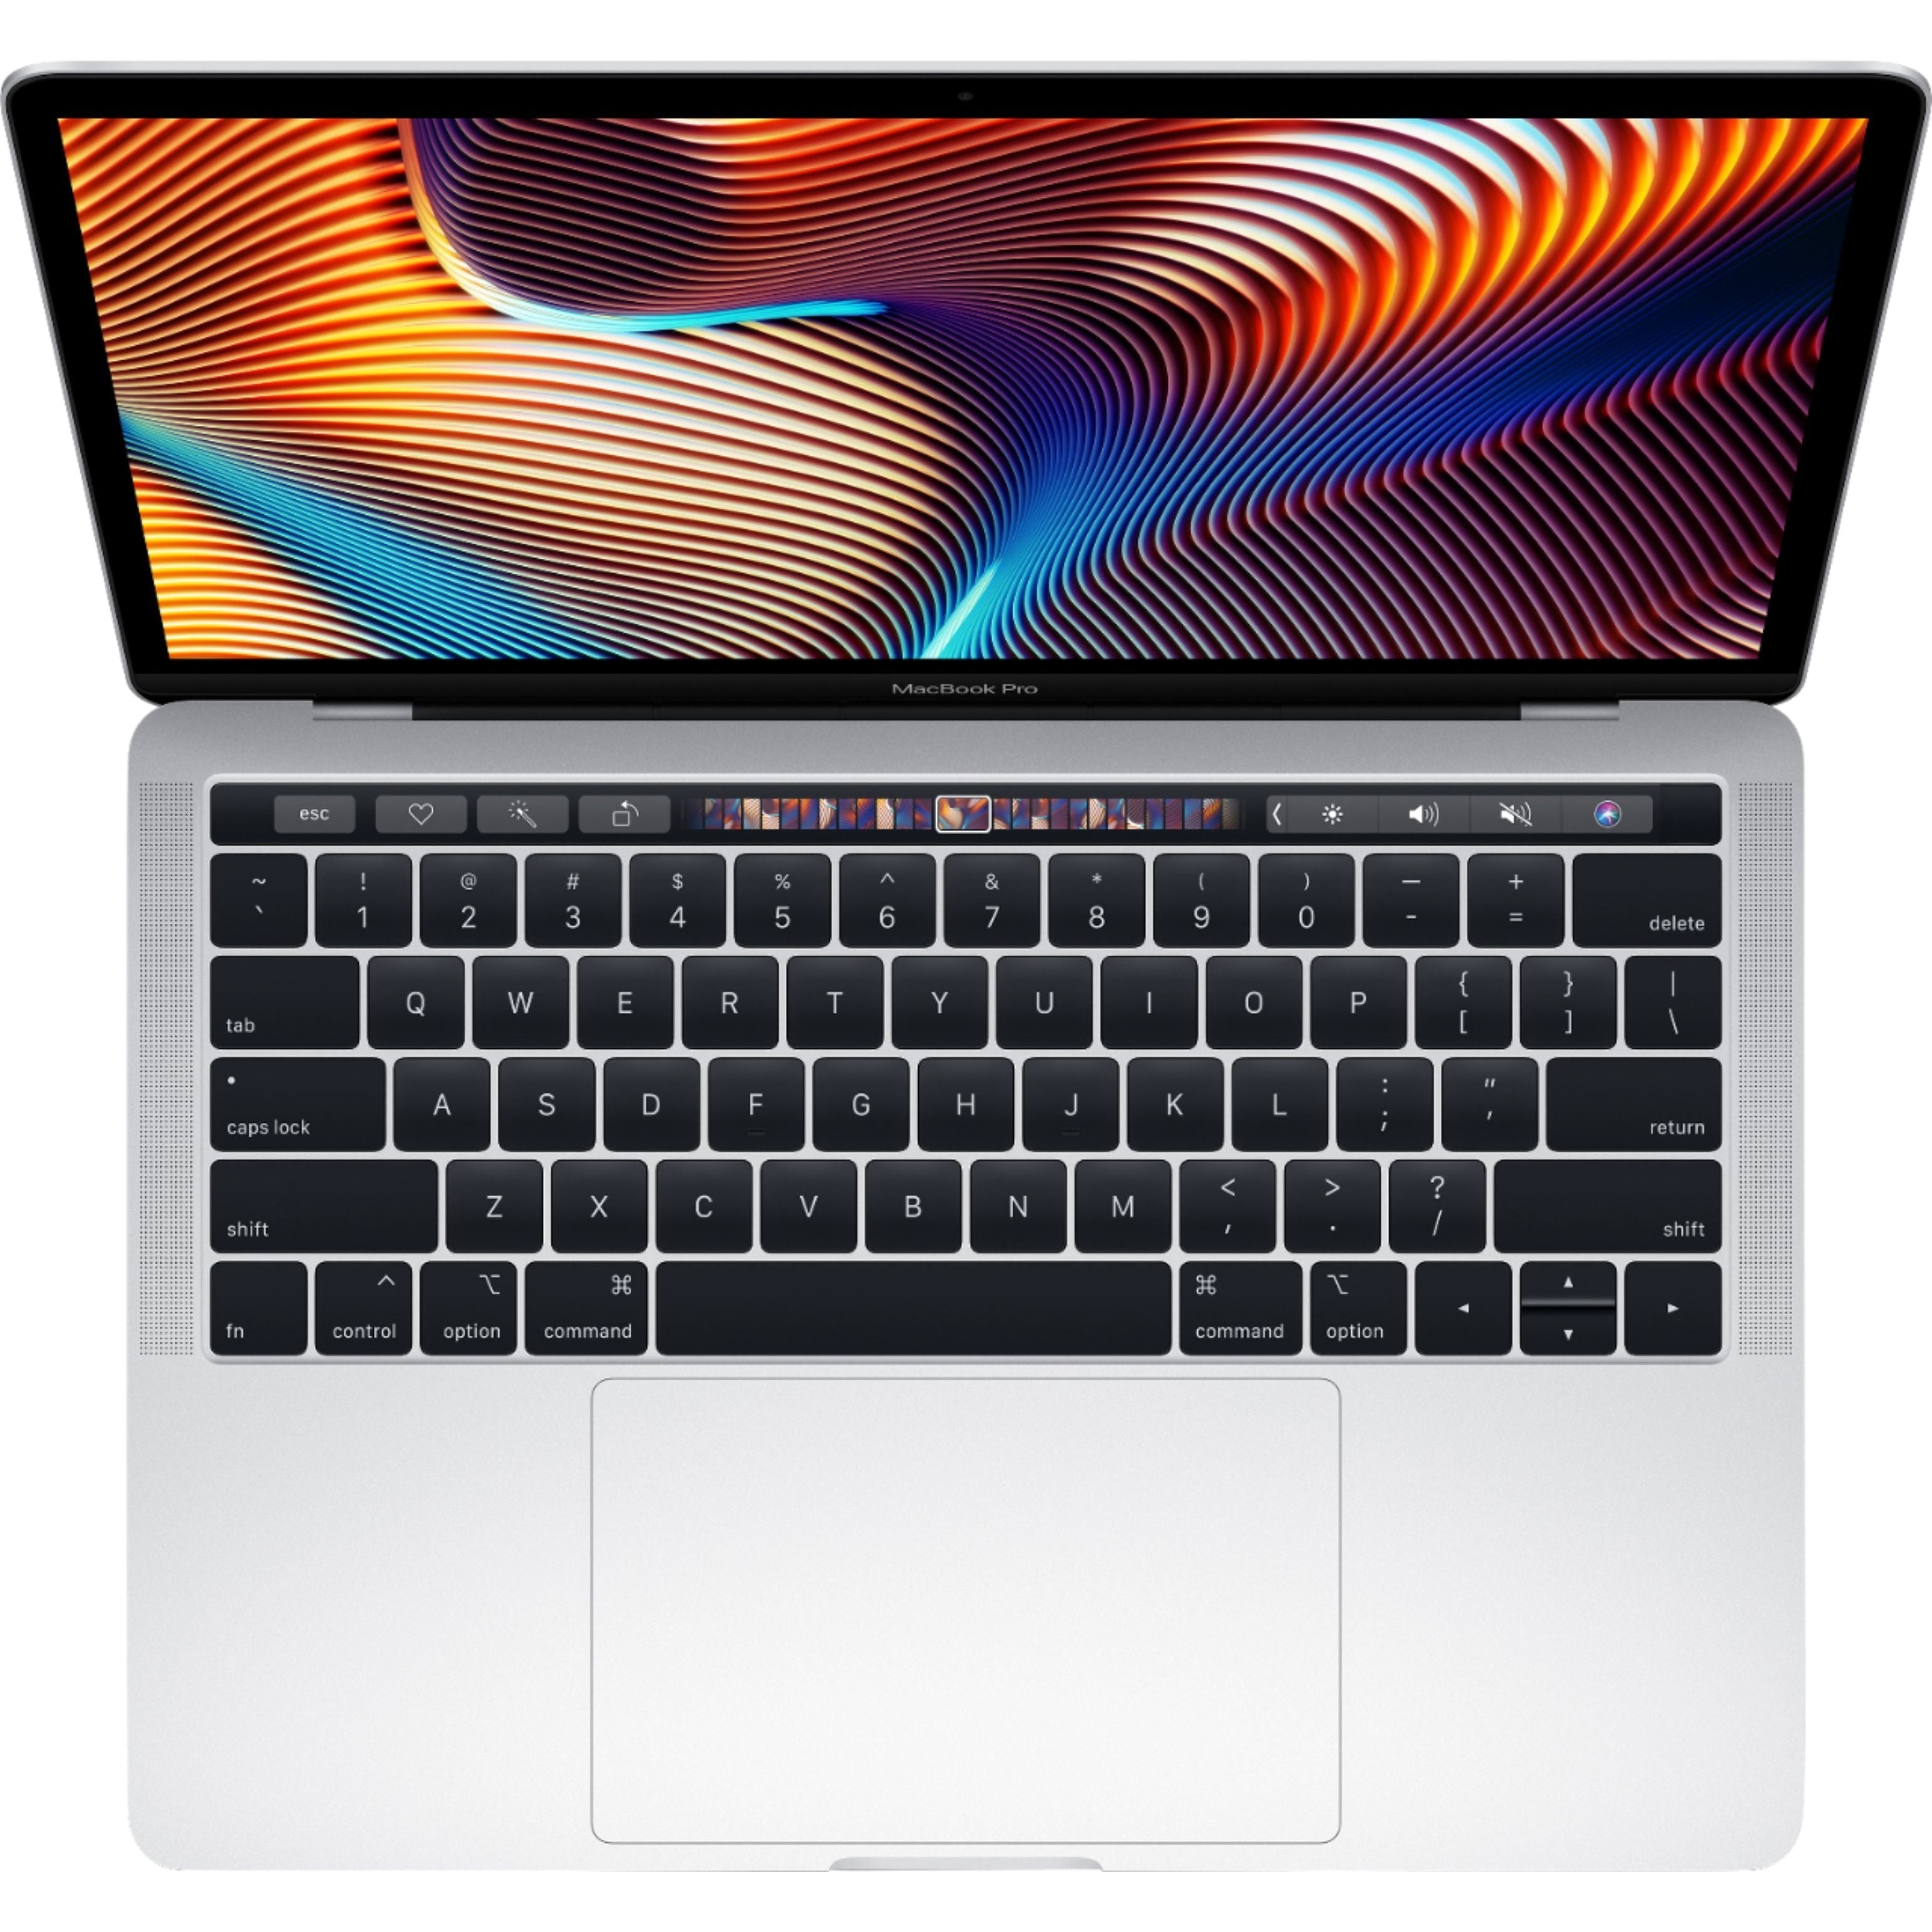 Apple MacBook Pro 13.3'' MUHQ2LL/A (2019) Intel Core i5, 8GB RAM, 128GB SSD, Silver - Refurbished Good